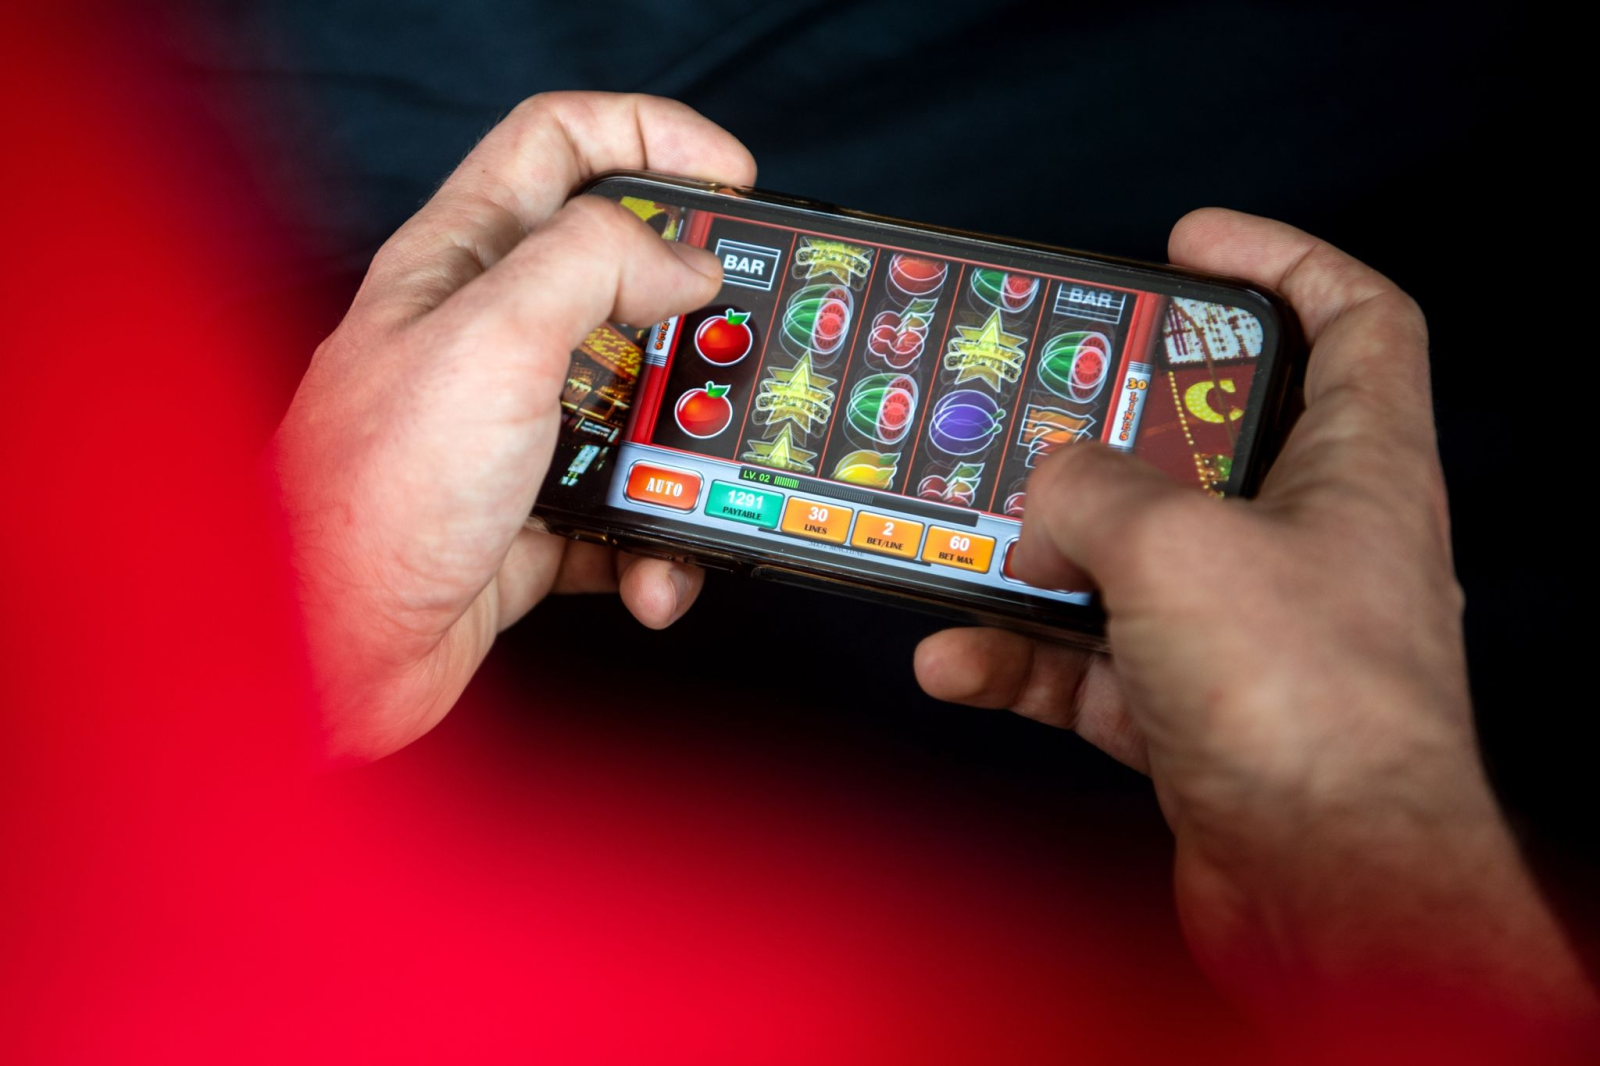 Auf einem Smartphone spielt ein Mann ein Online-Spiel.